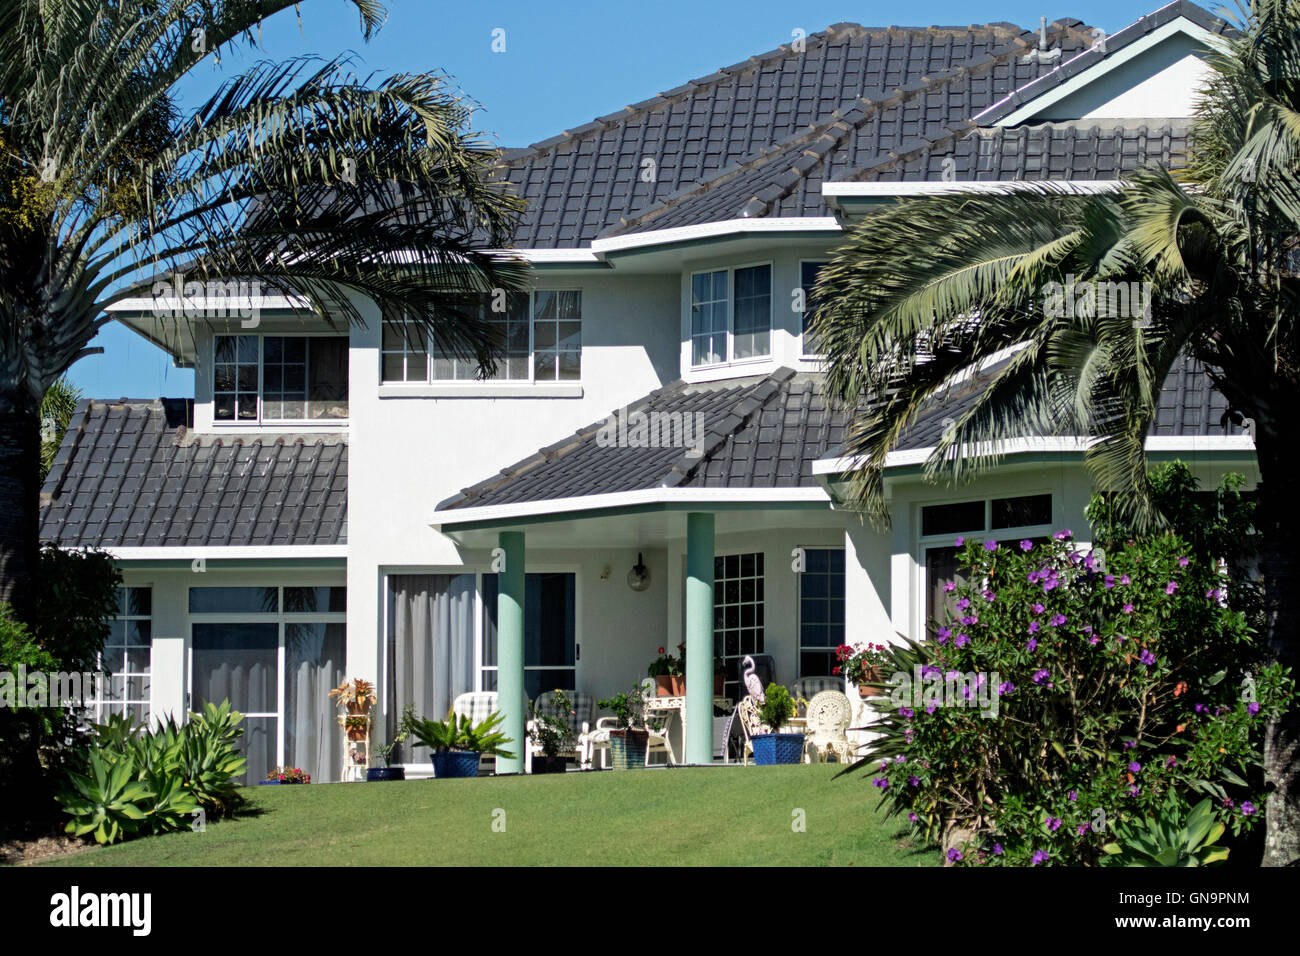 Moderna casa lujosa de dos pisos con techo de tejas negras, paredes  blancas, porche, jardín con césped, arbustos florecientes, palmeras  Fotografía de stock - Alamy